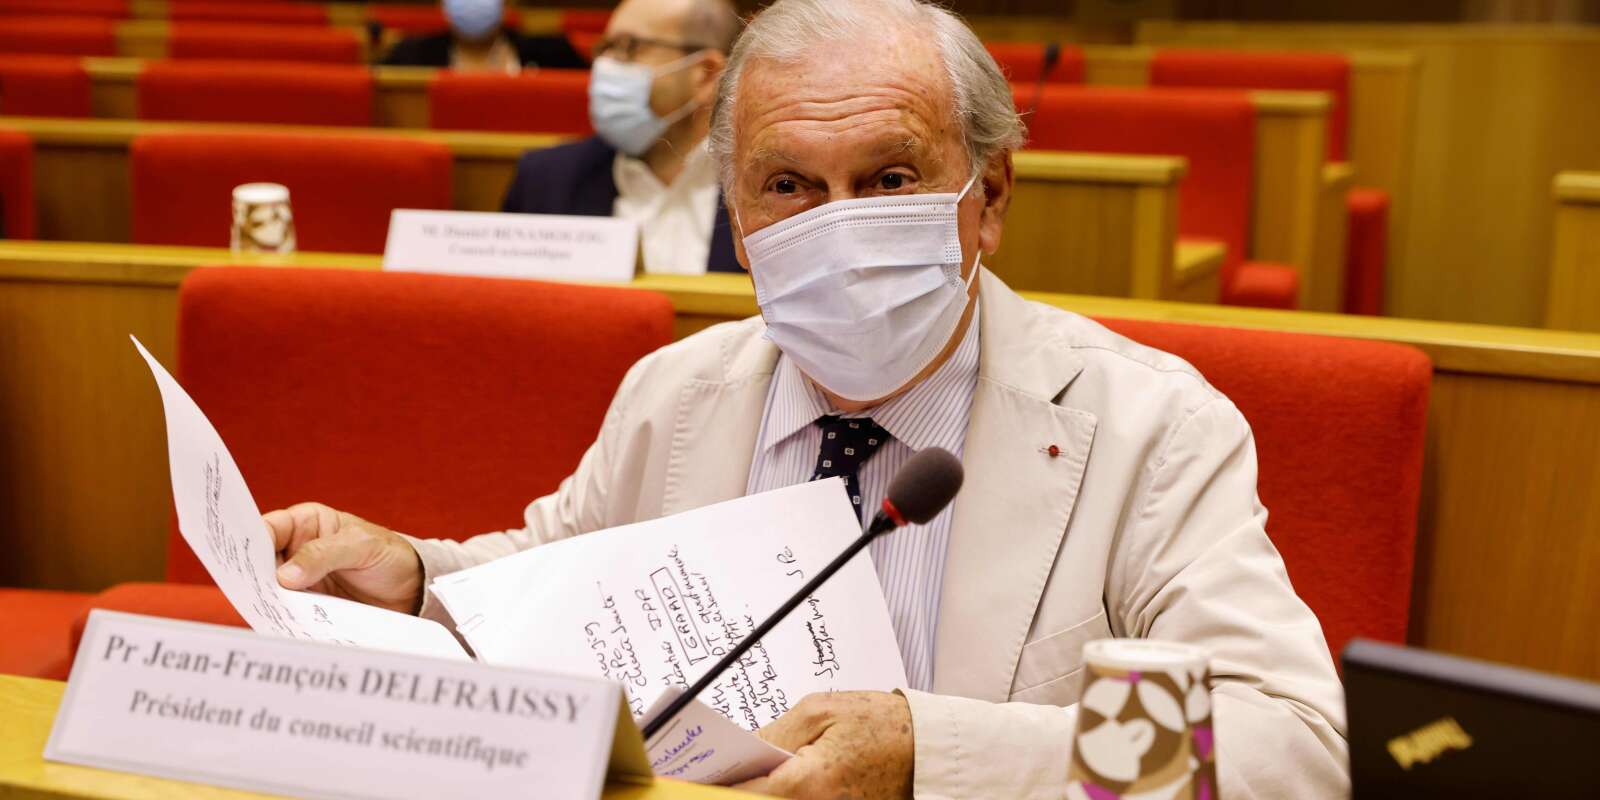 Jean-François Delfraissy est entendu, mardi matin, par la commission d’enquête sénatoriale chargée de « l’évaluation des politiques publiques face aux grandes pandémies à la lumière de la crise sanitaire ».